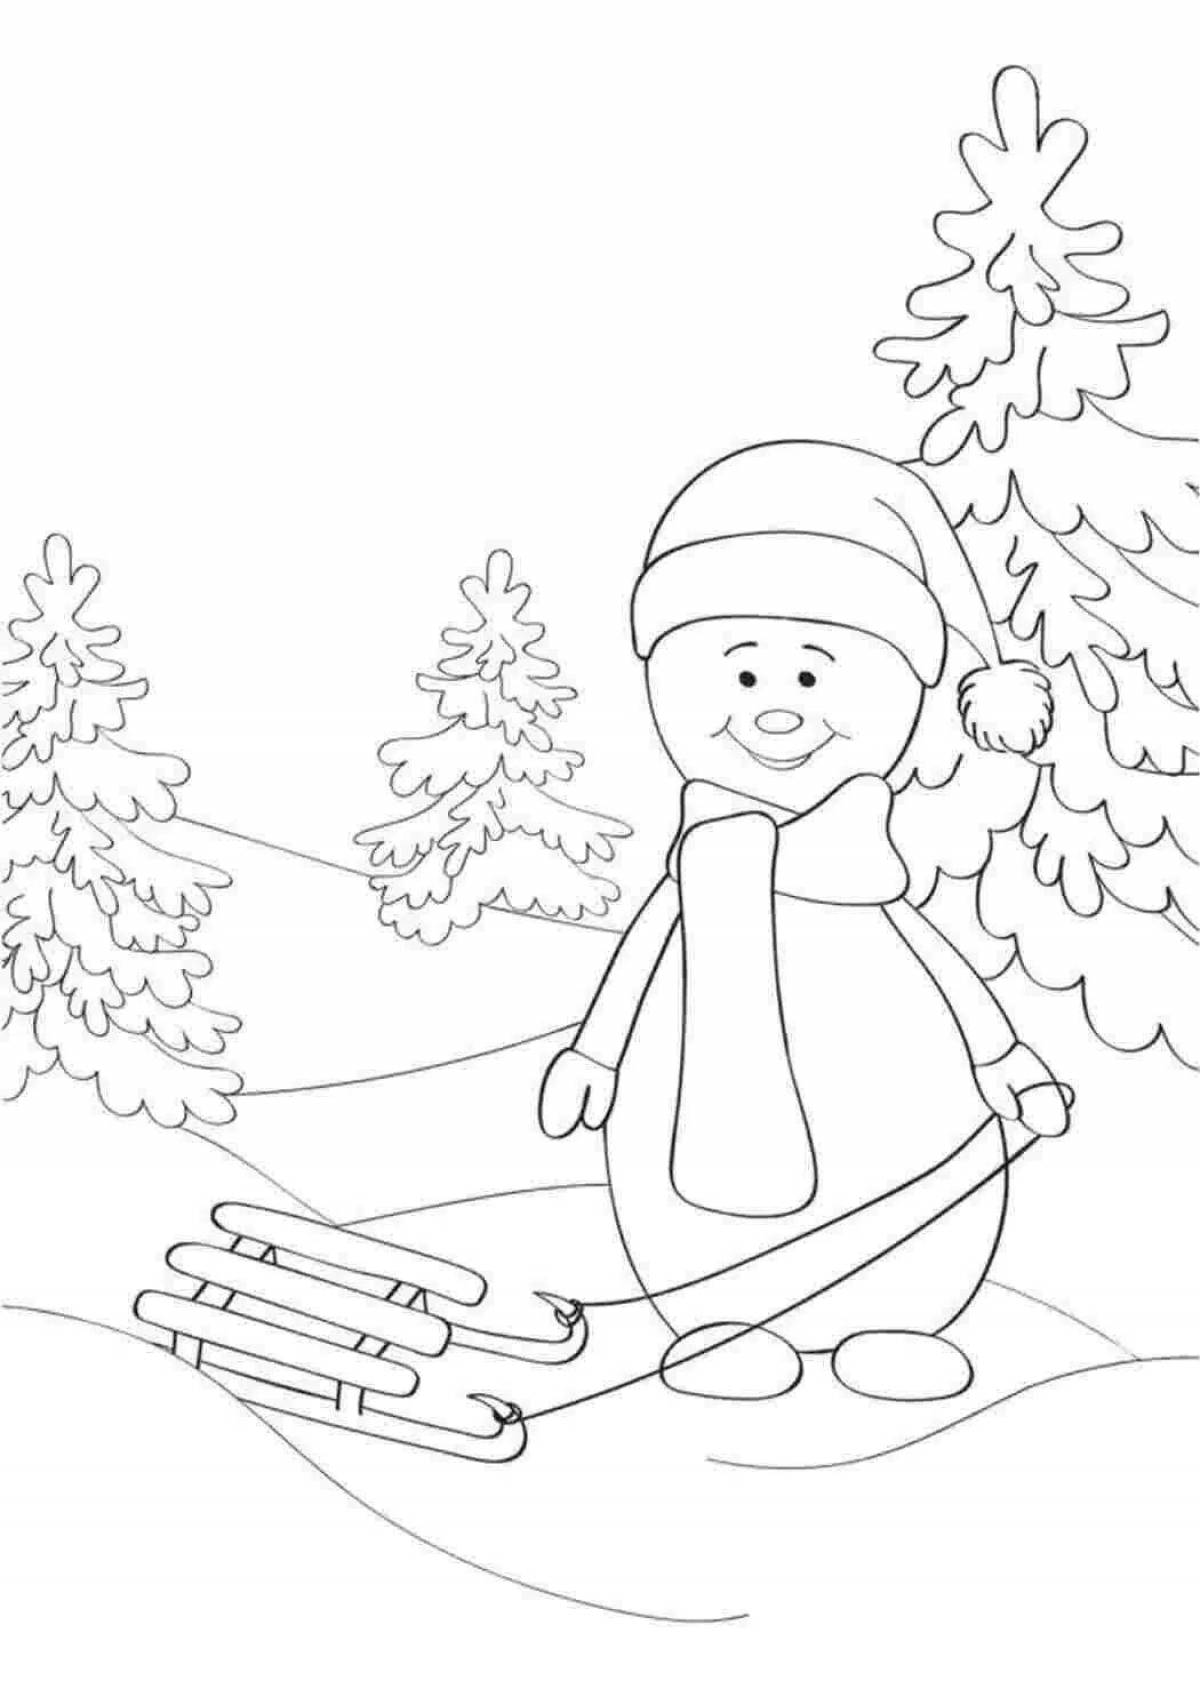 Раскраска радостный снеговик на санках